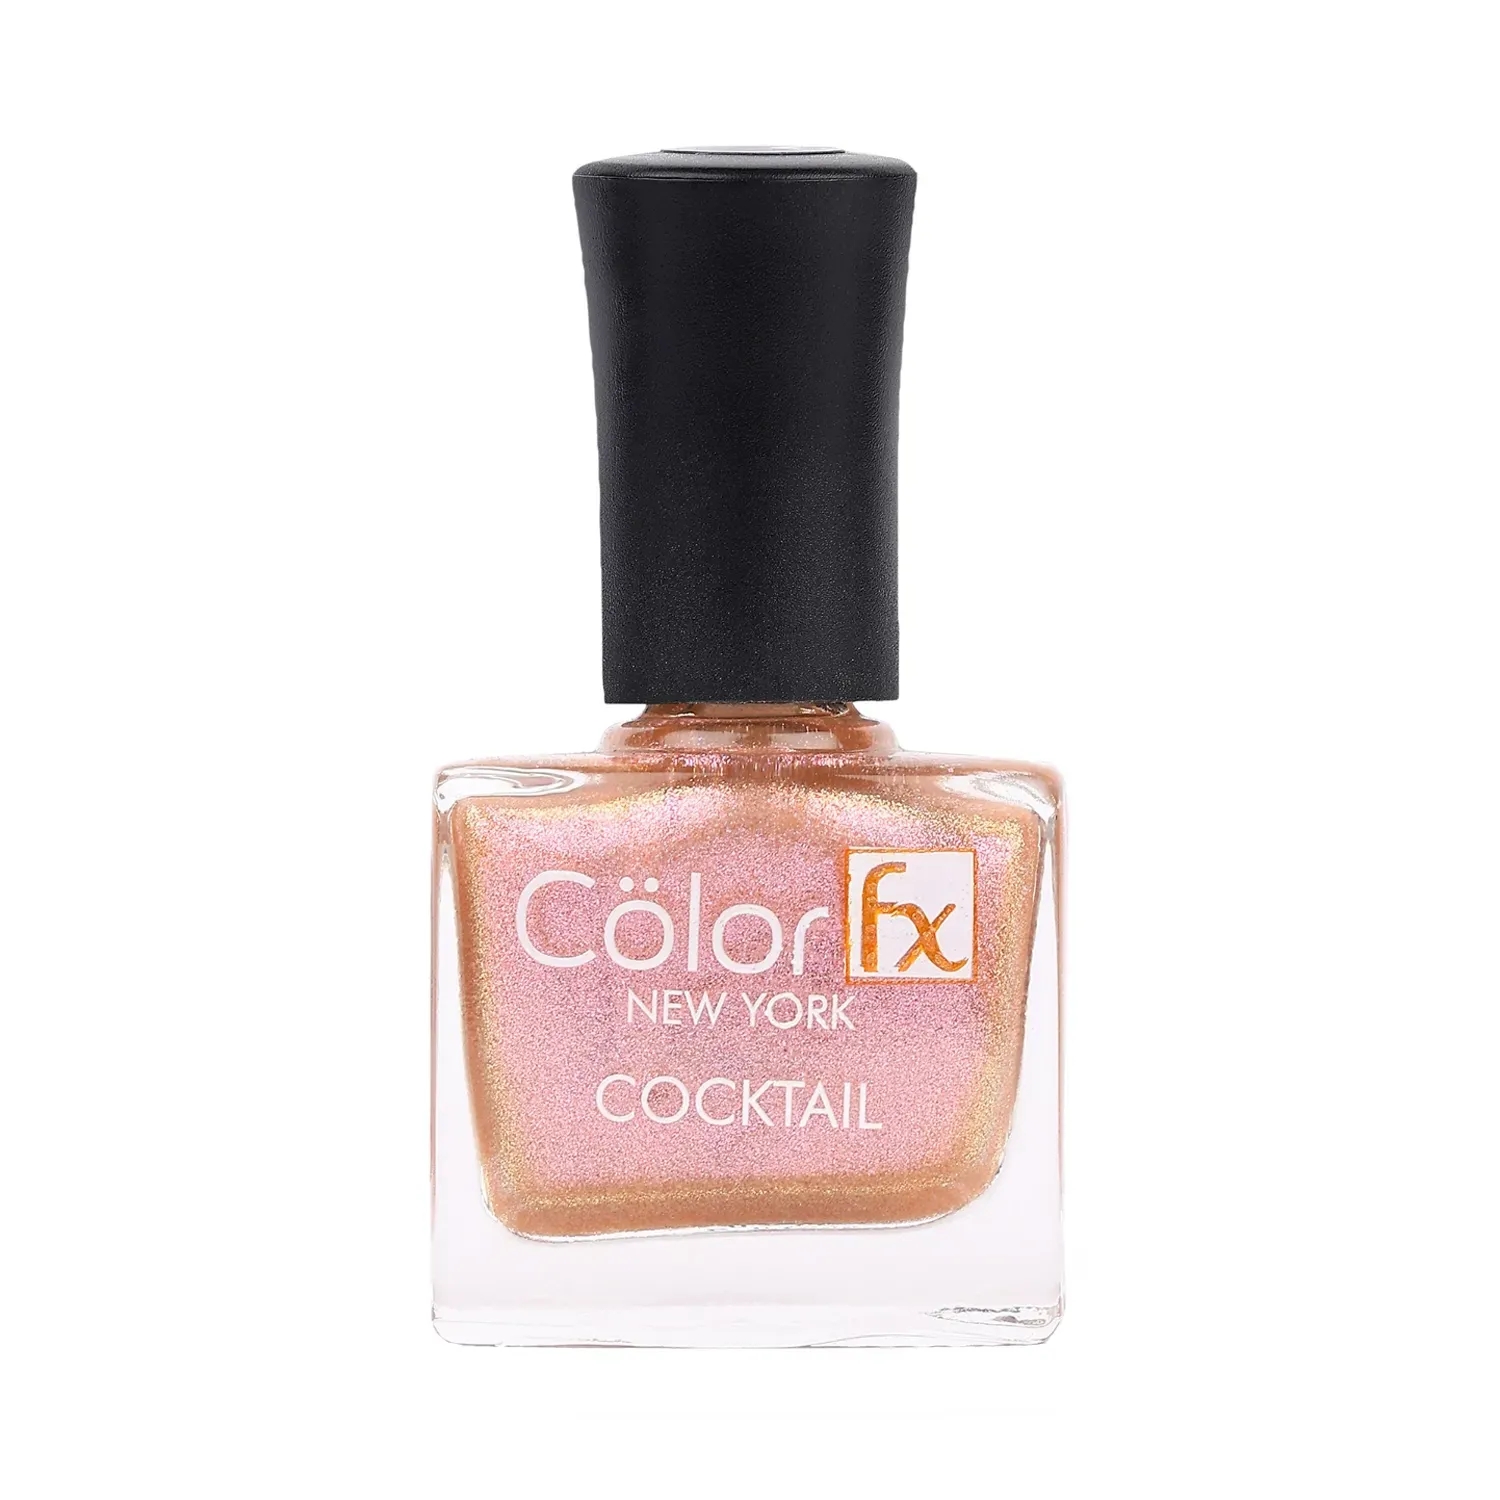 Color Fx Cocktail Nail Polish - 136 Shade (9ml)